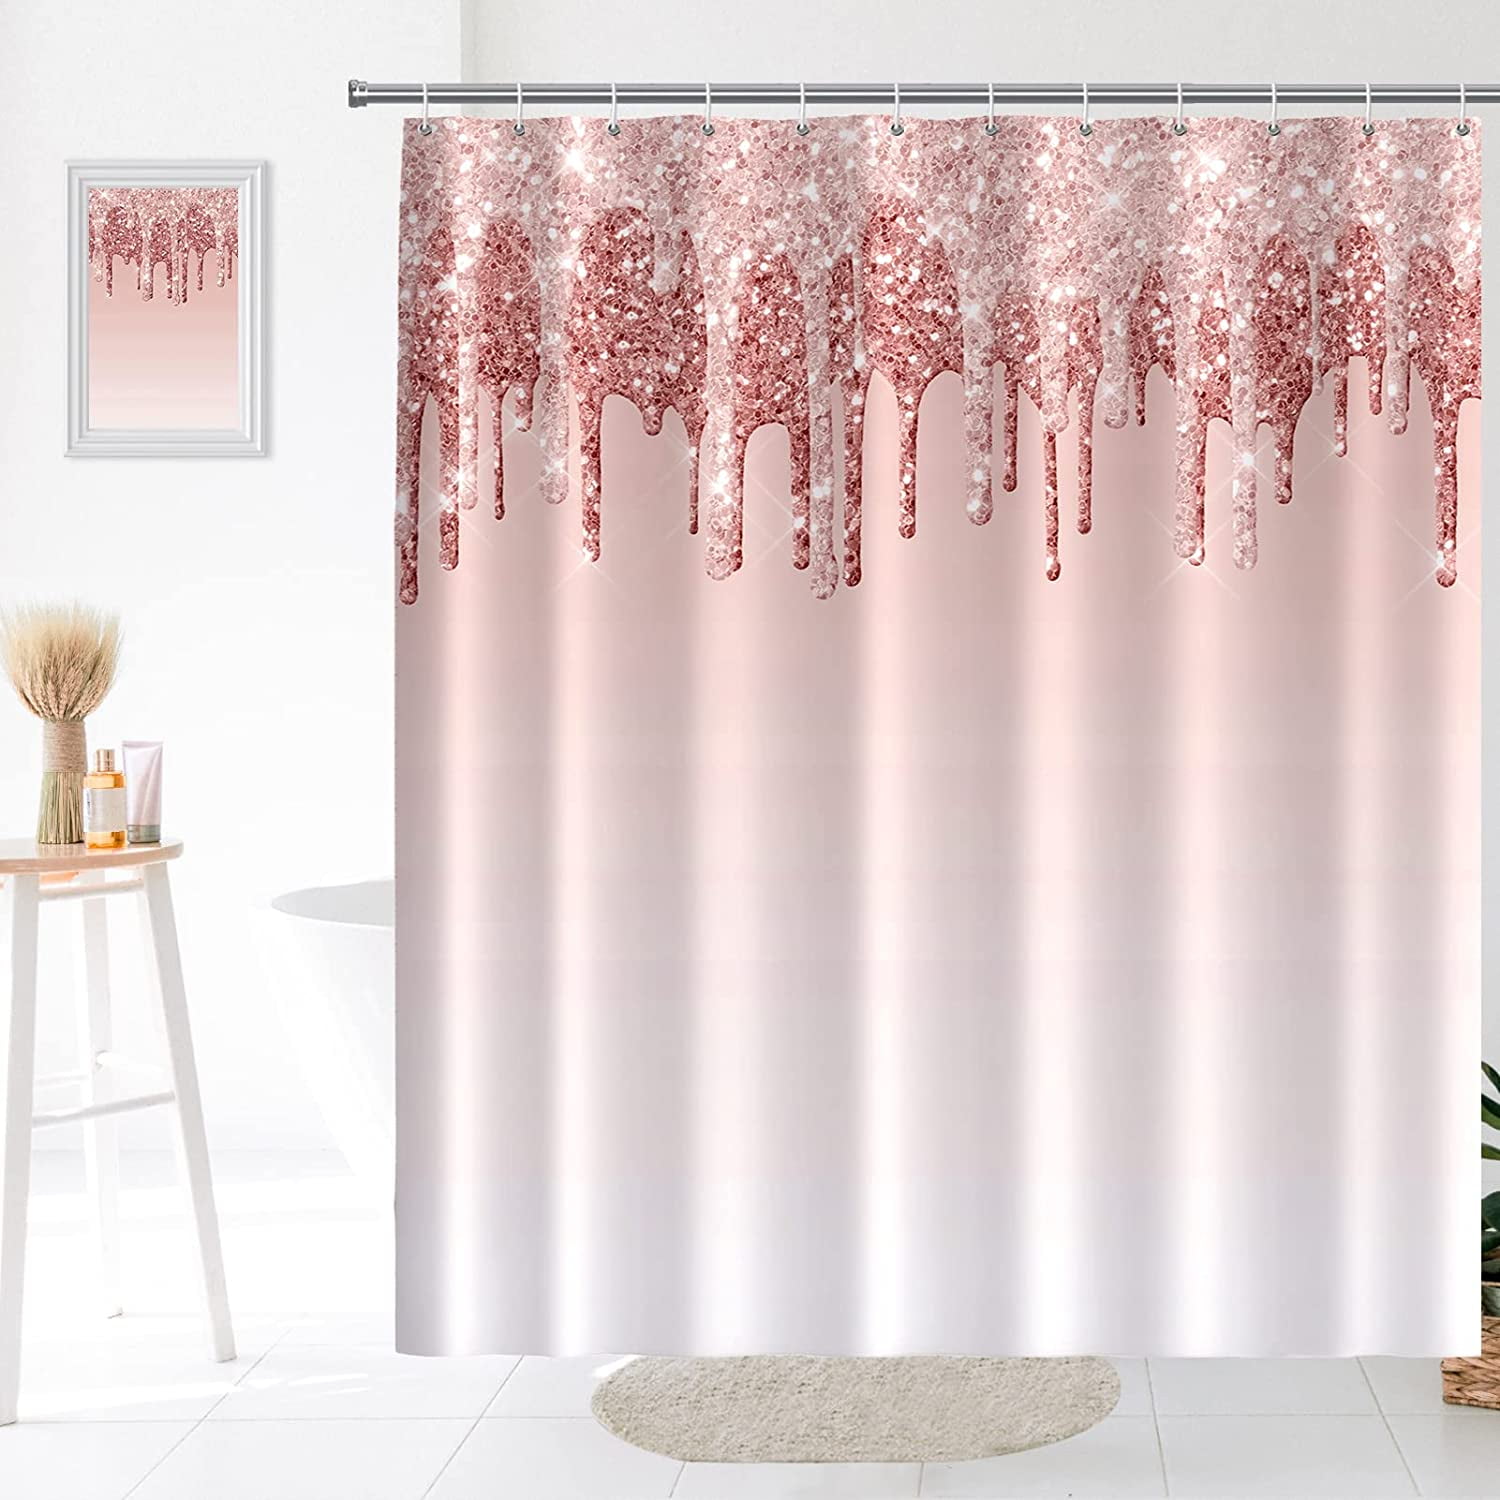 light pink faux glitter texture shower curtain